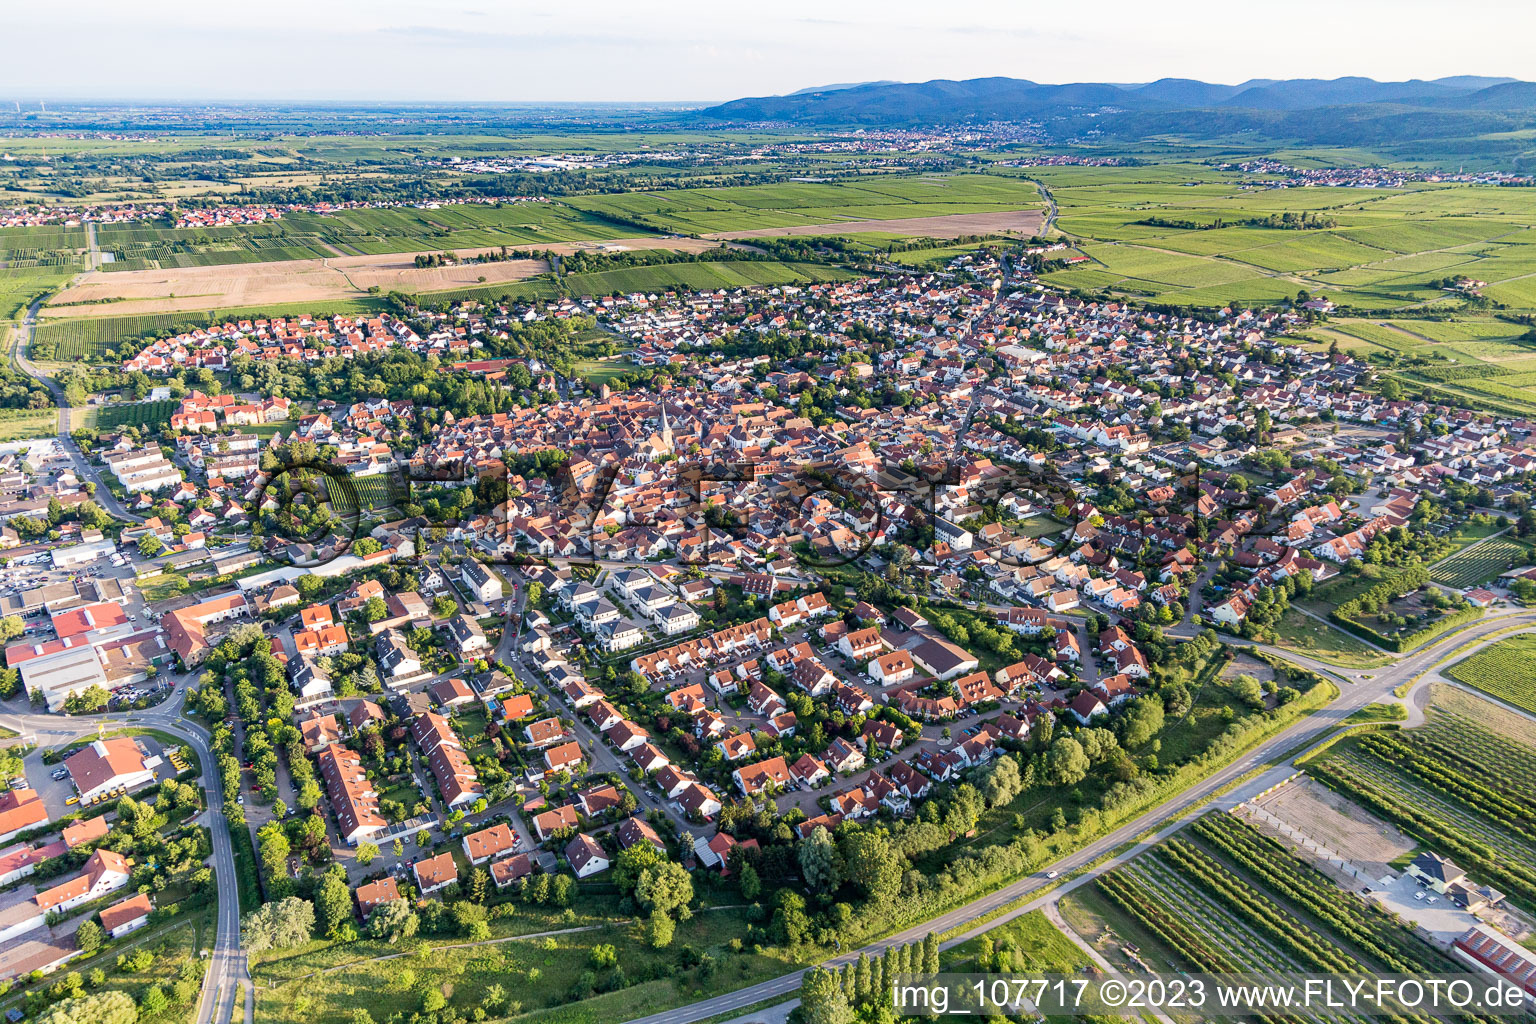 Freinsheim im Bundesland Rheinland-Pfalz, Deutschland aus der Luft betrachtet